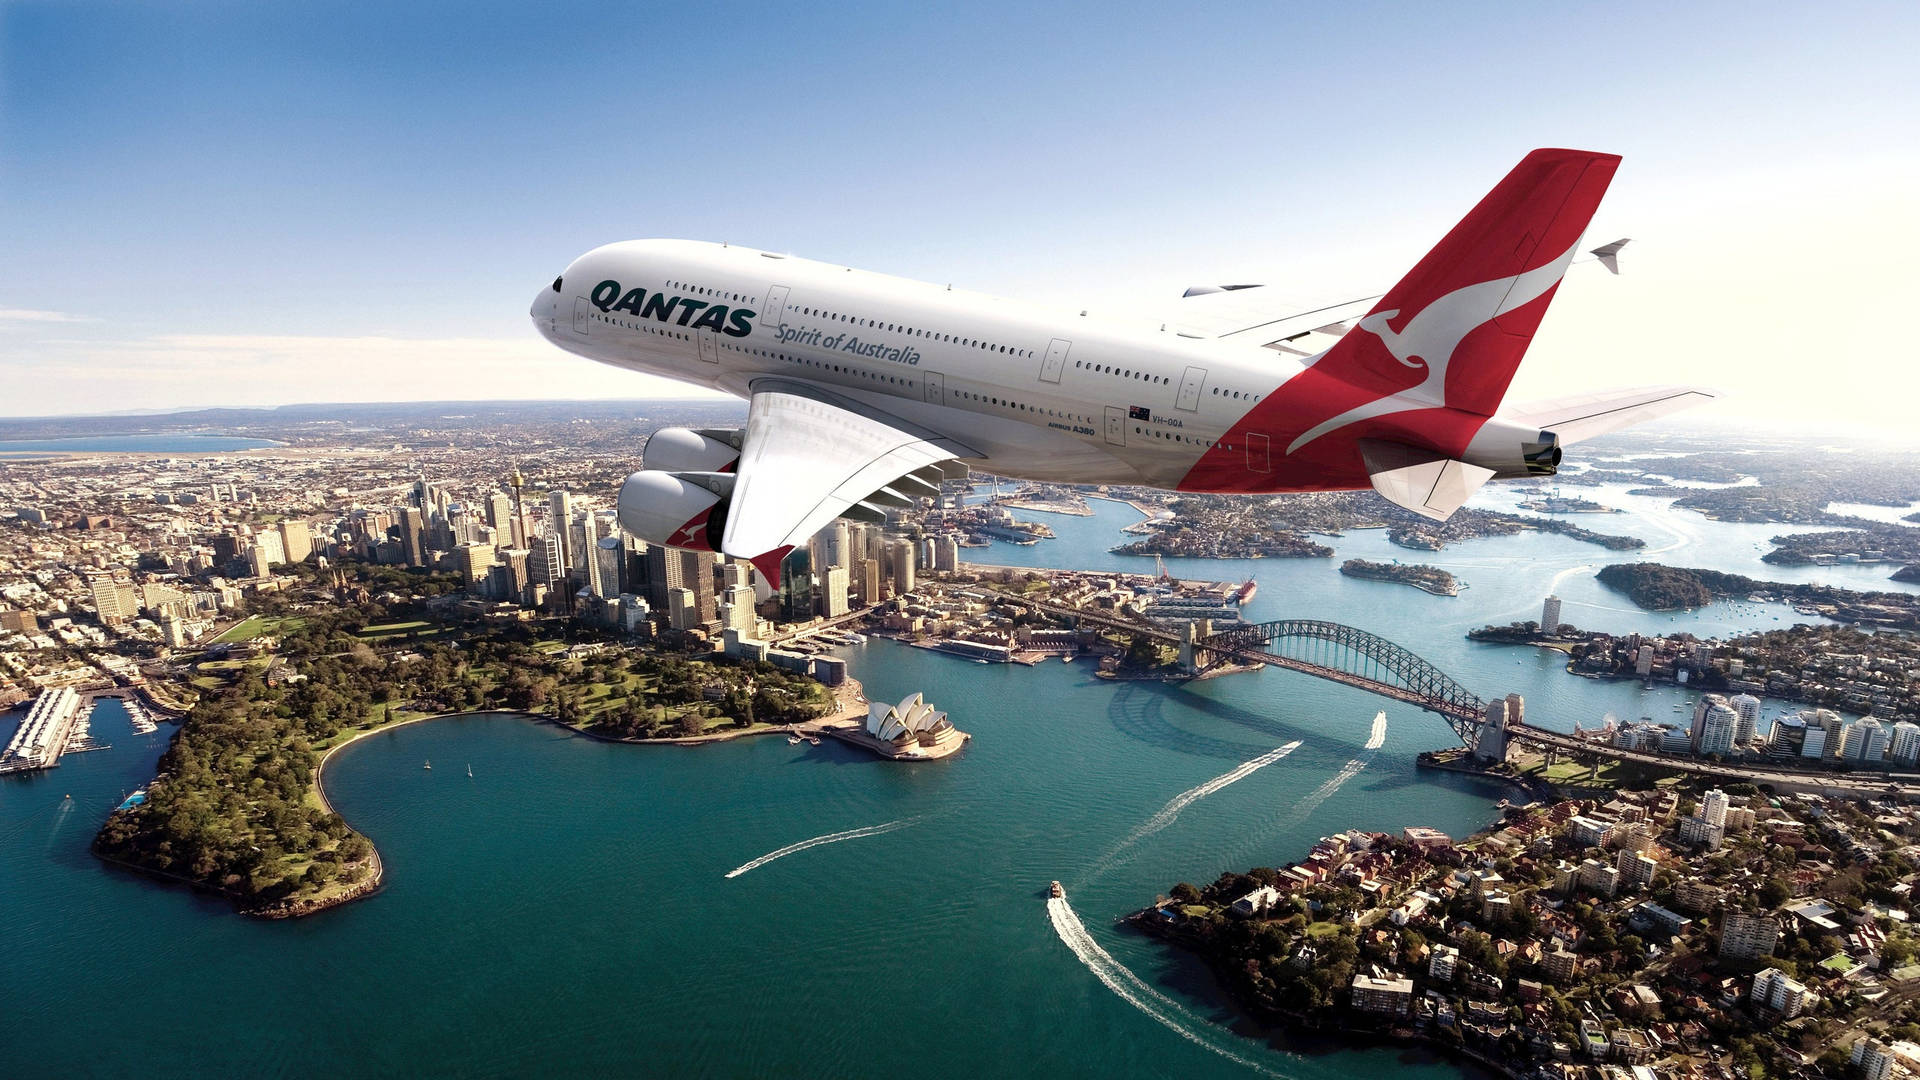 Qantasflygplan Flyger Över Sydney Australien. Wallpaper